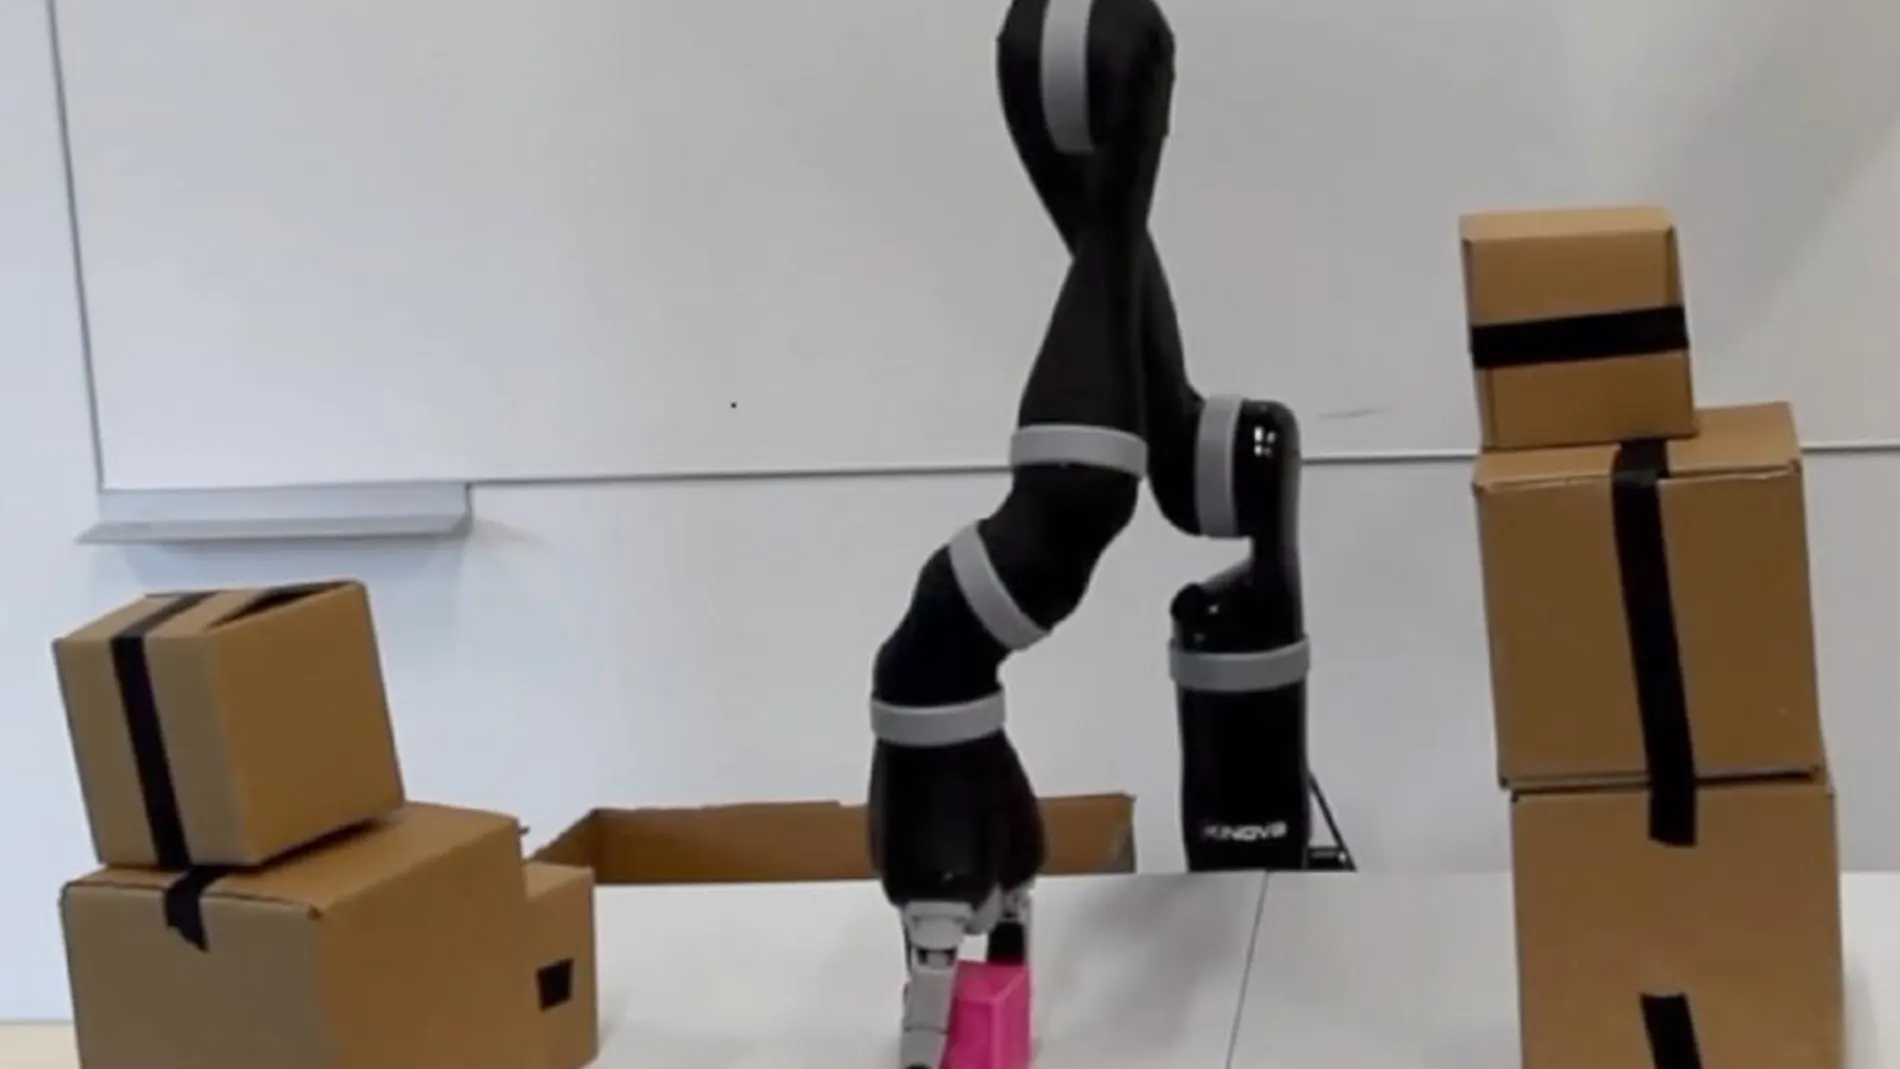 El robot coordinará movimientos de forma más rápida y eficiente